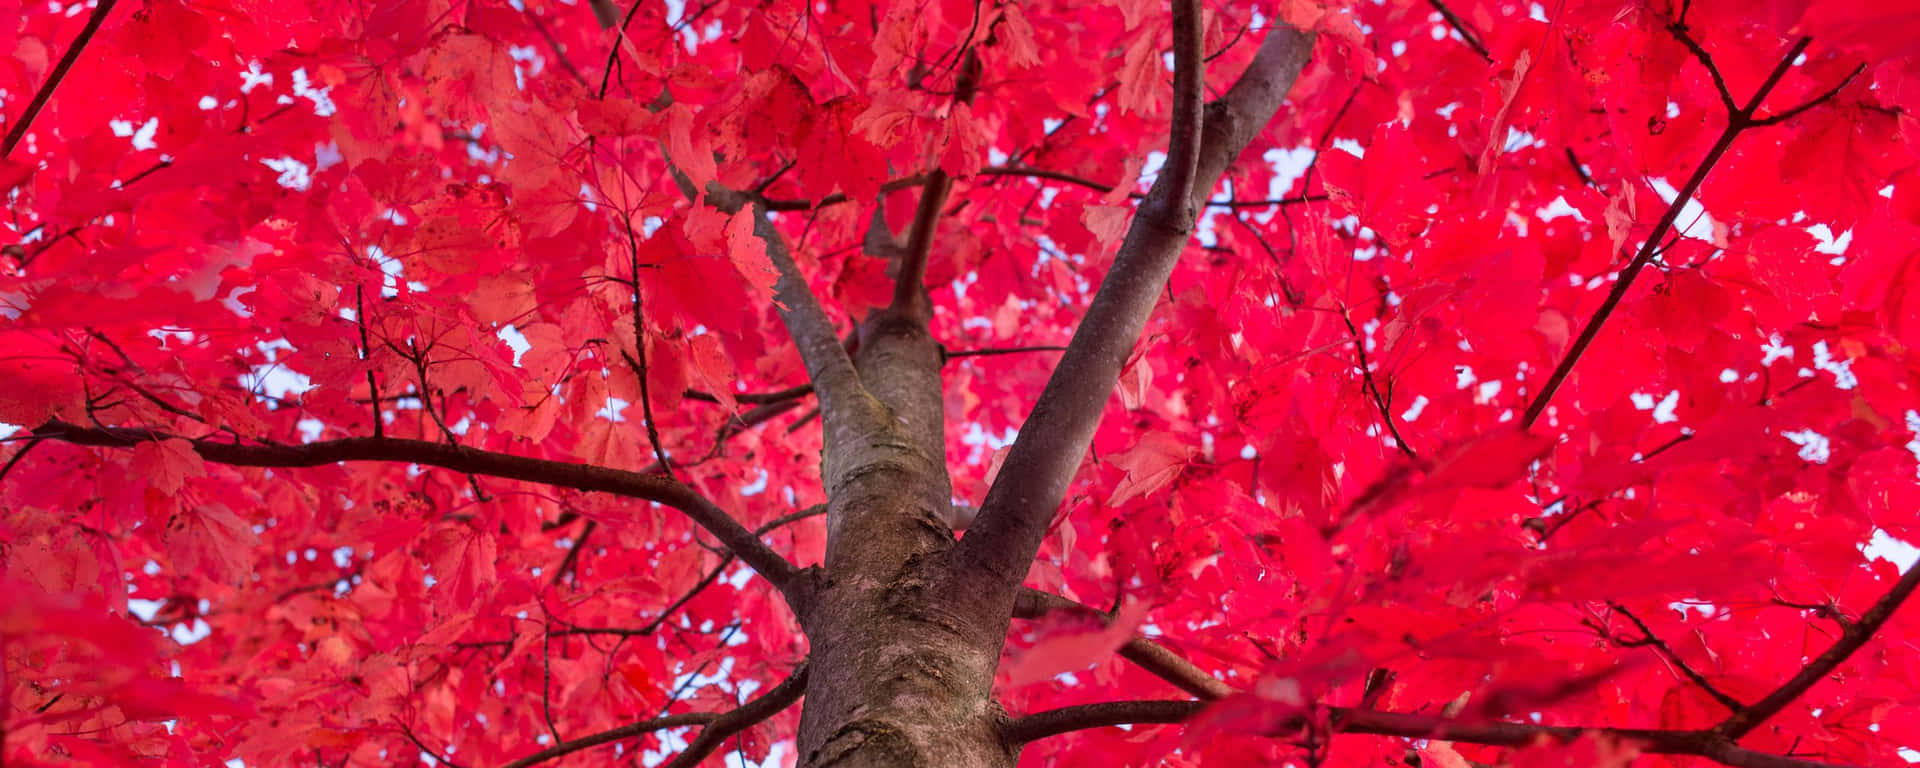 Árvore De Bordo De Baixo Ângulo Em Vermelho, No Formato Ultra Wide Hd. Papel de Parede